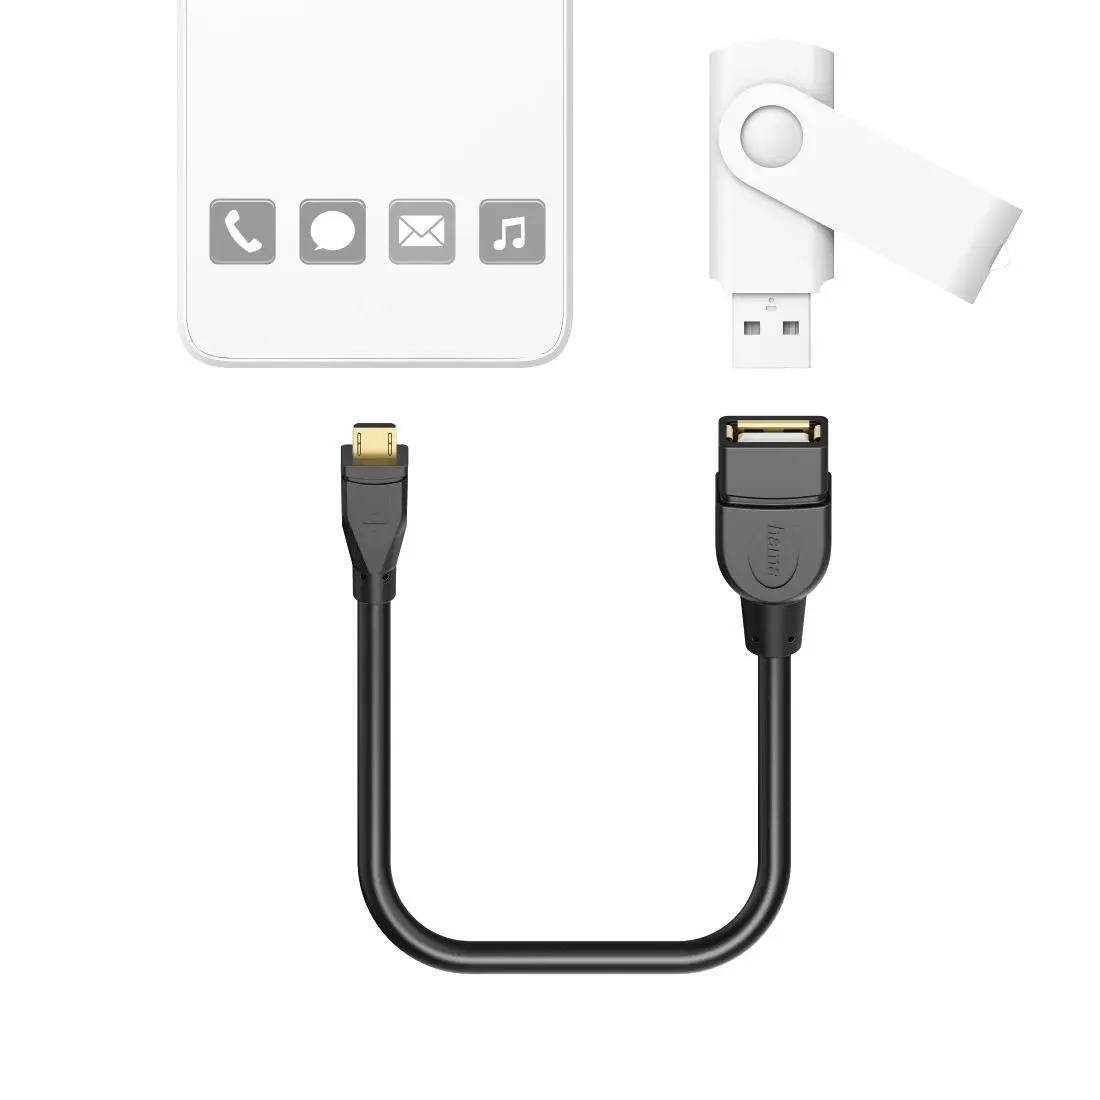 Cablu Adaptor Hama, USB 2.0, OTG, 15 cm, Negru